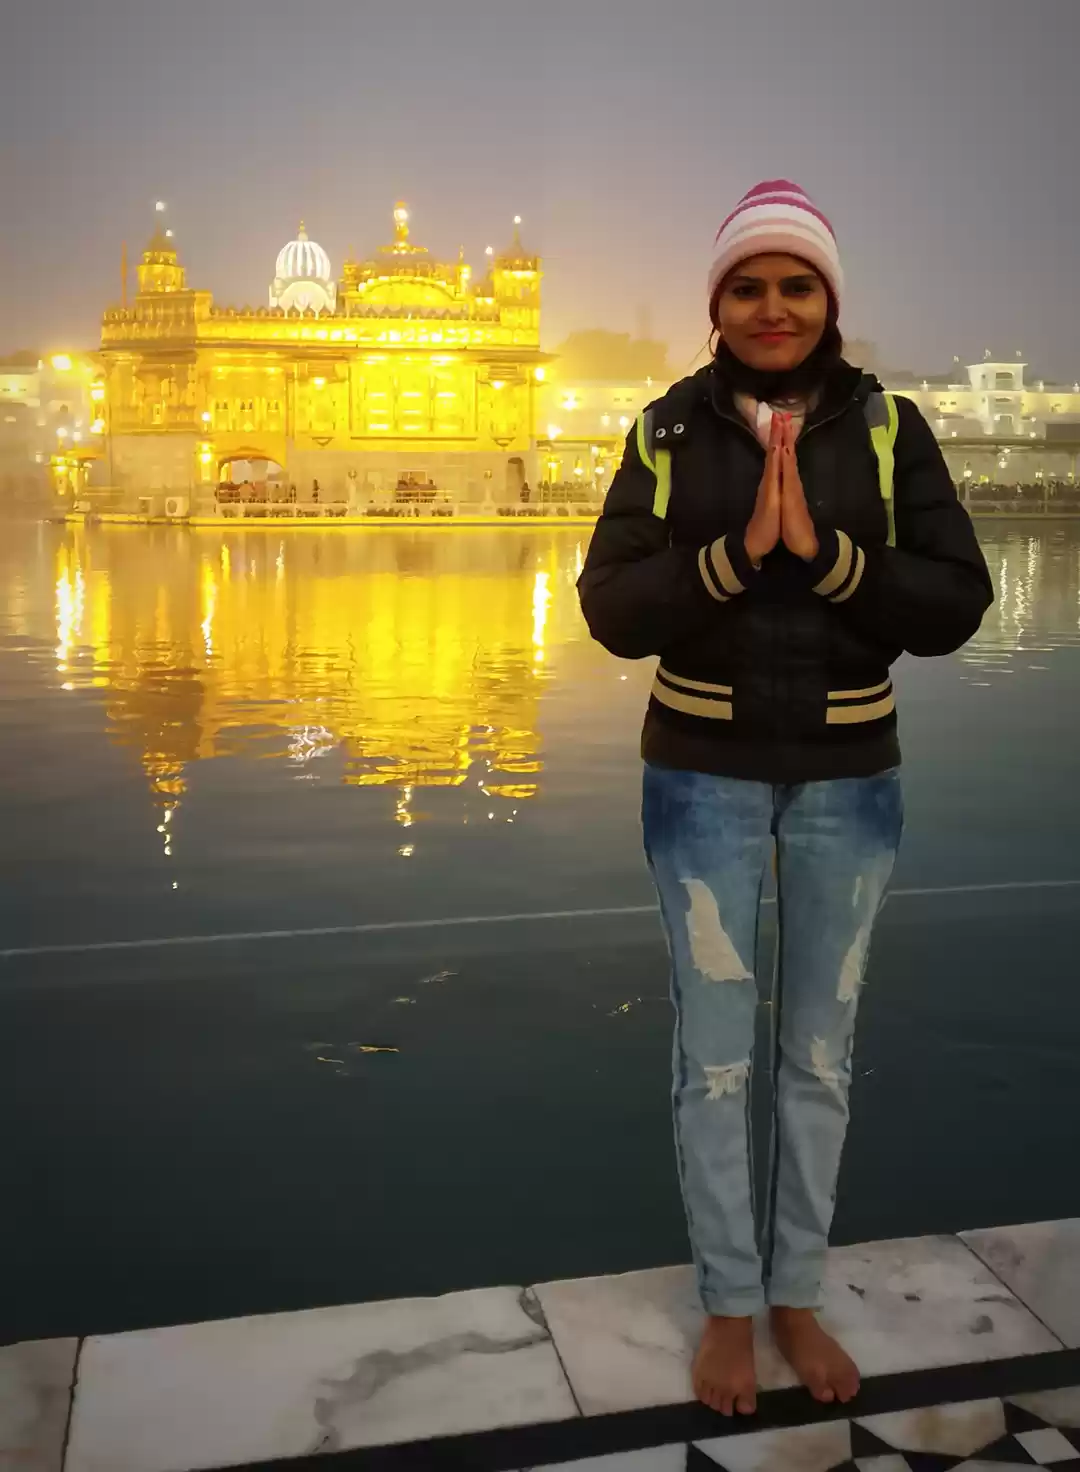 India: Man beaten to death at Sikh Golden Temple | News | Al Jazeera